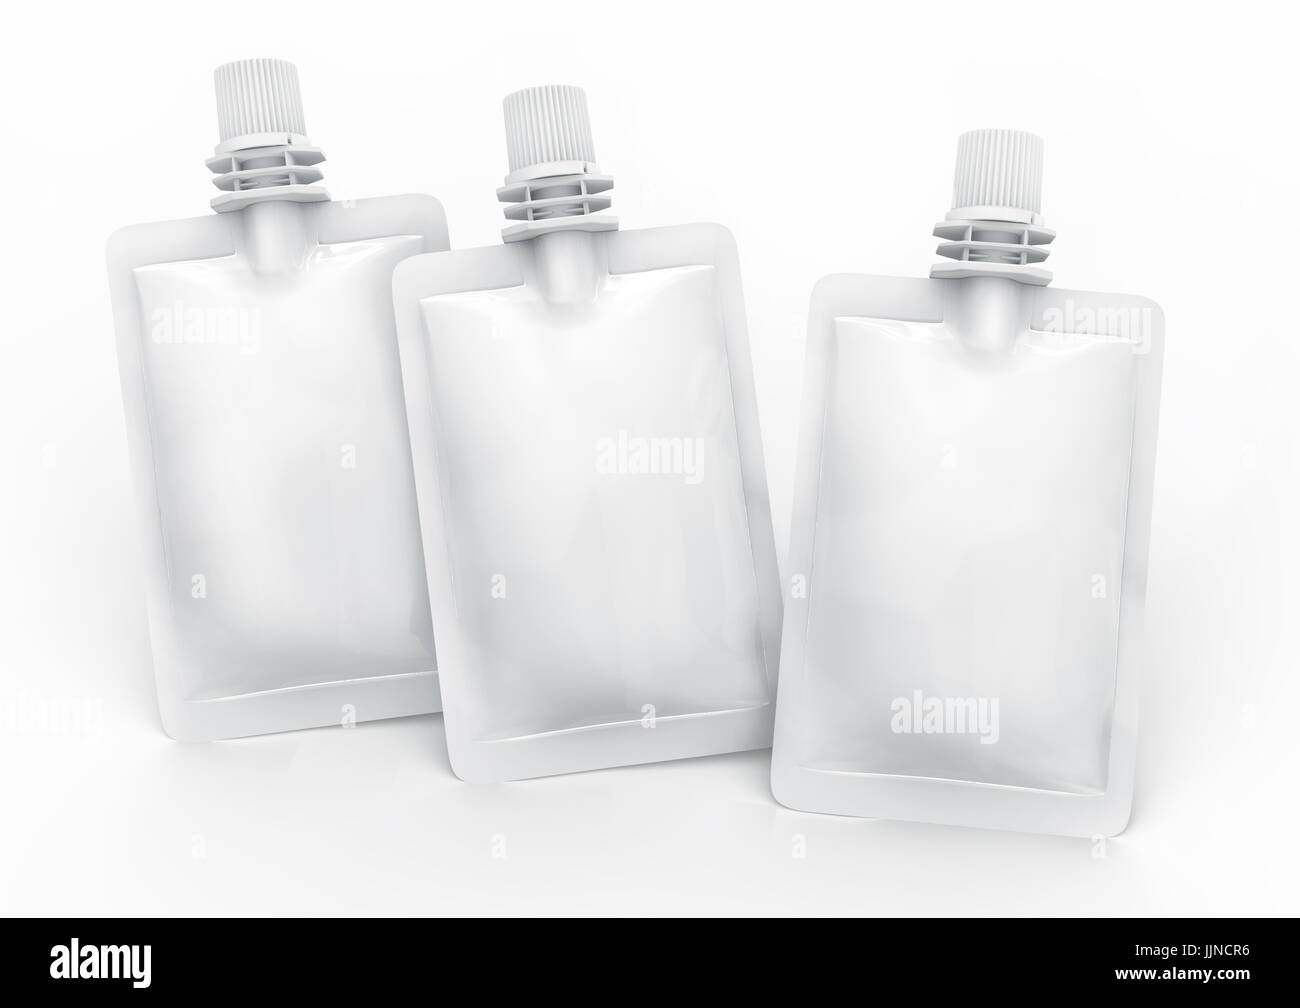 Folienbeutel für Getränk, leere Folie Tasche Modell für Getränke Design in 3D-Rendering versiegelt, erhöhten Blick auf drei schwebende Tasche Stockfoto